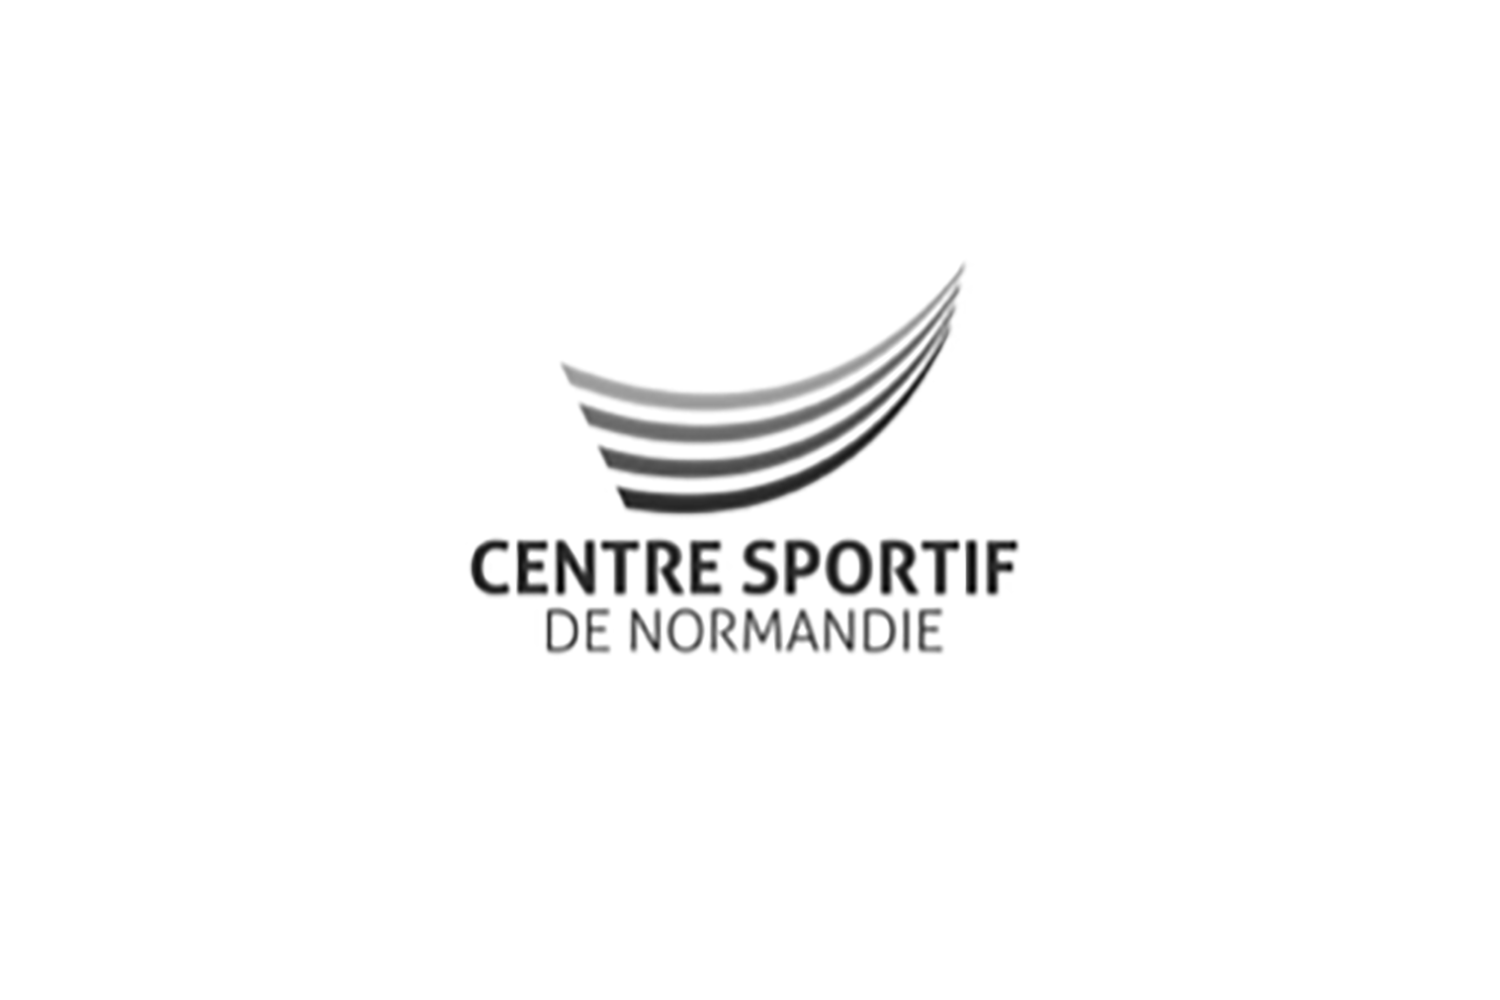 Centre sportif de Normandie